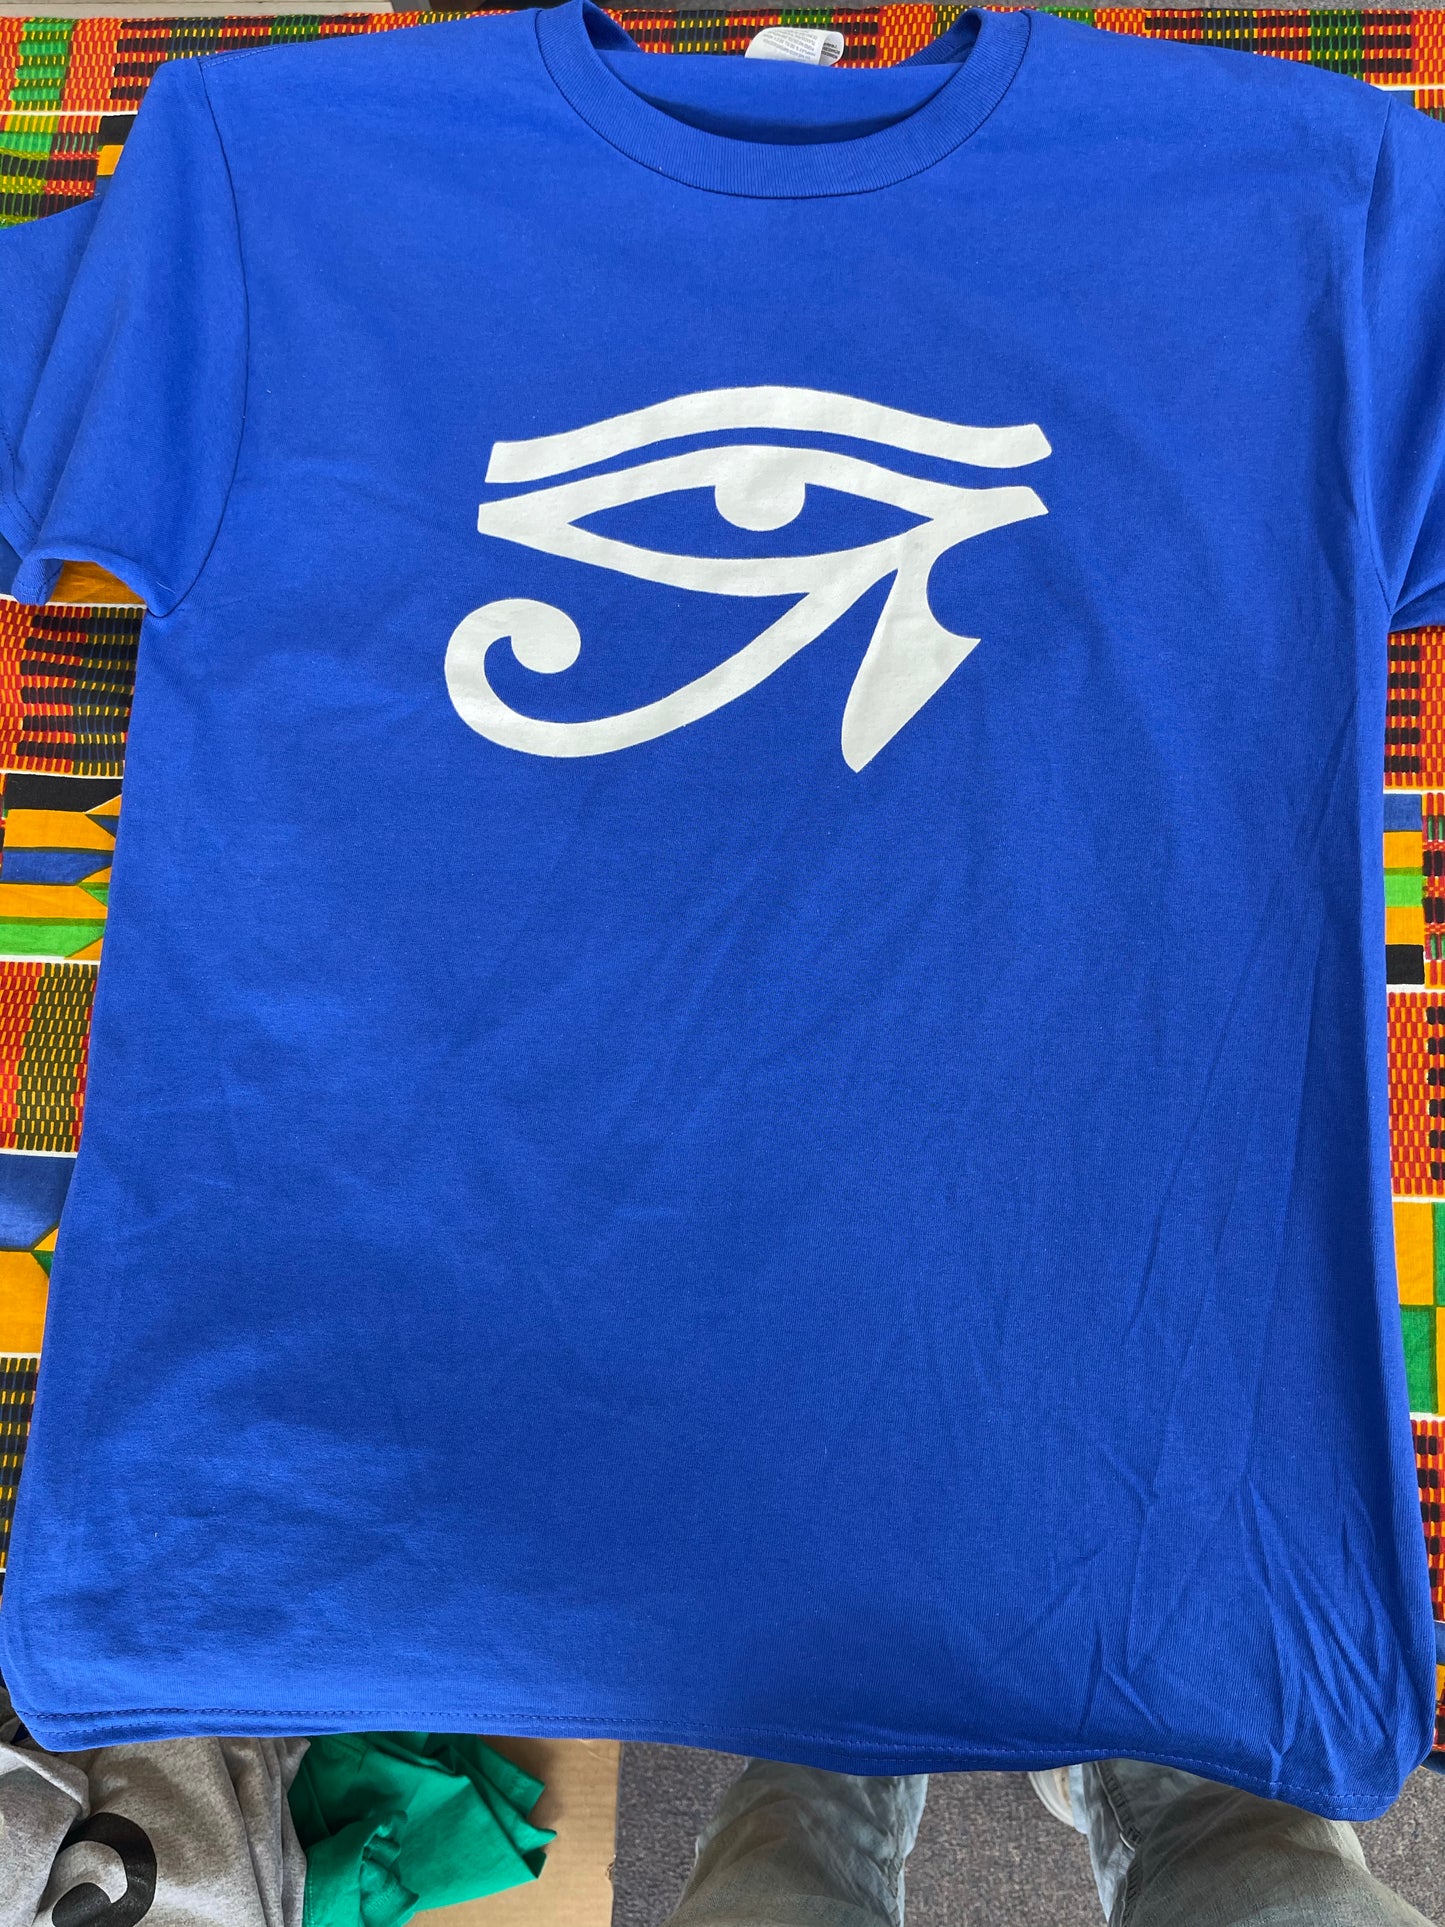 Eye of Ra T-shirt black